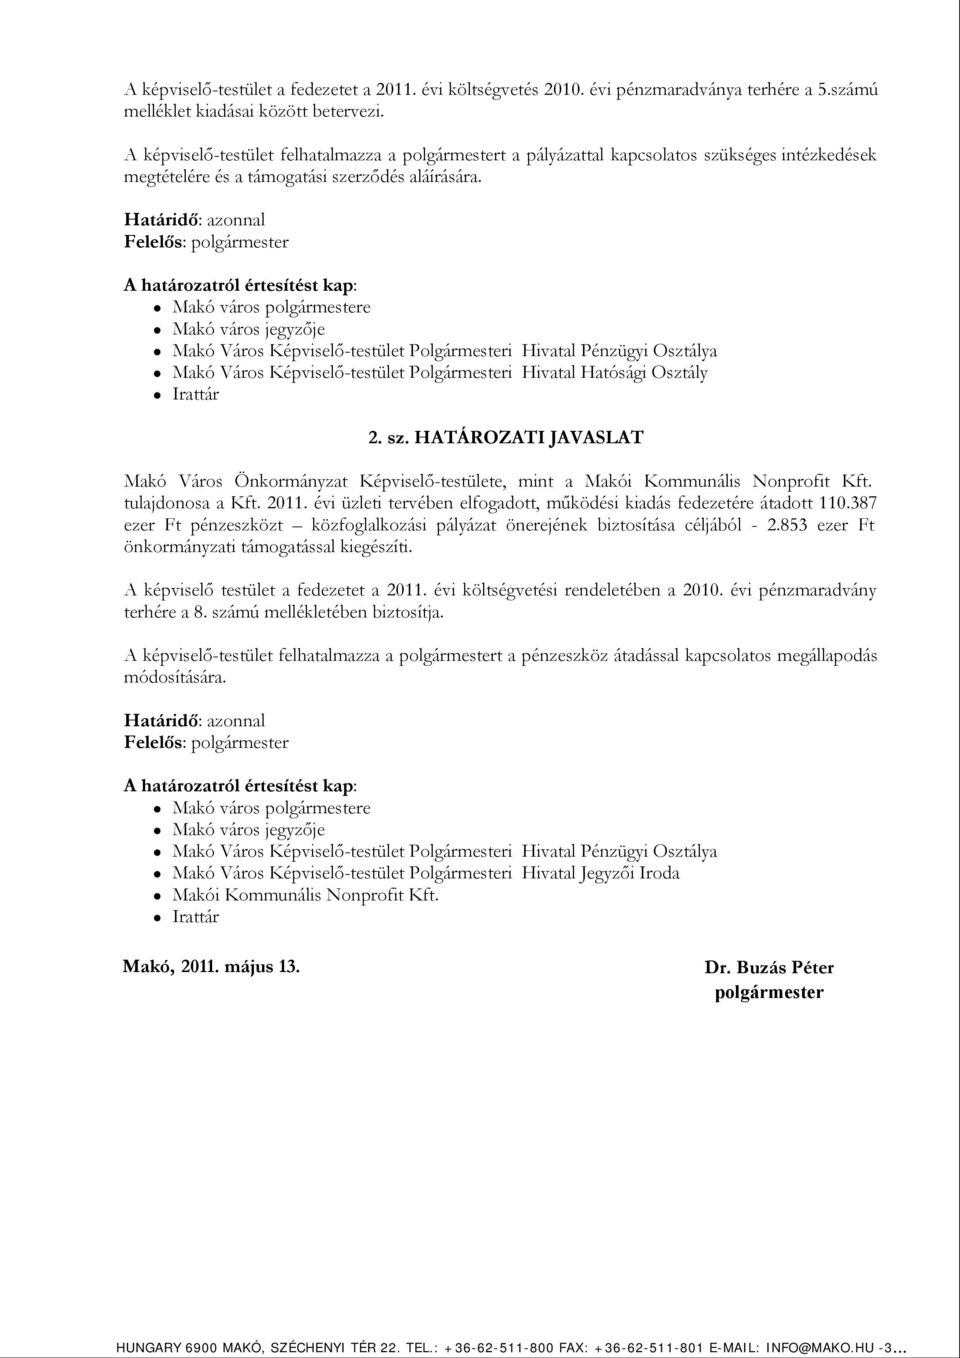 Határidő: azonnal Felelős: polgármester A határozatról értesítést kap: Makó város polgármestere Makó város jegyzője Makó Város Képviselő-testület Polgármesteri Hivatal Pénzügyi Osztálya Makó Város